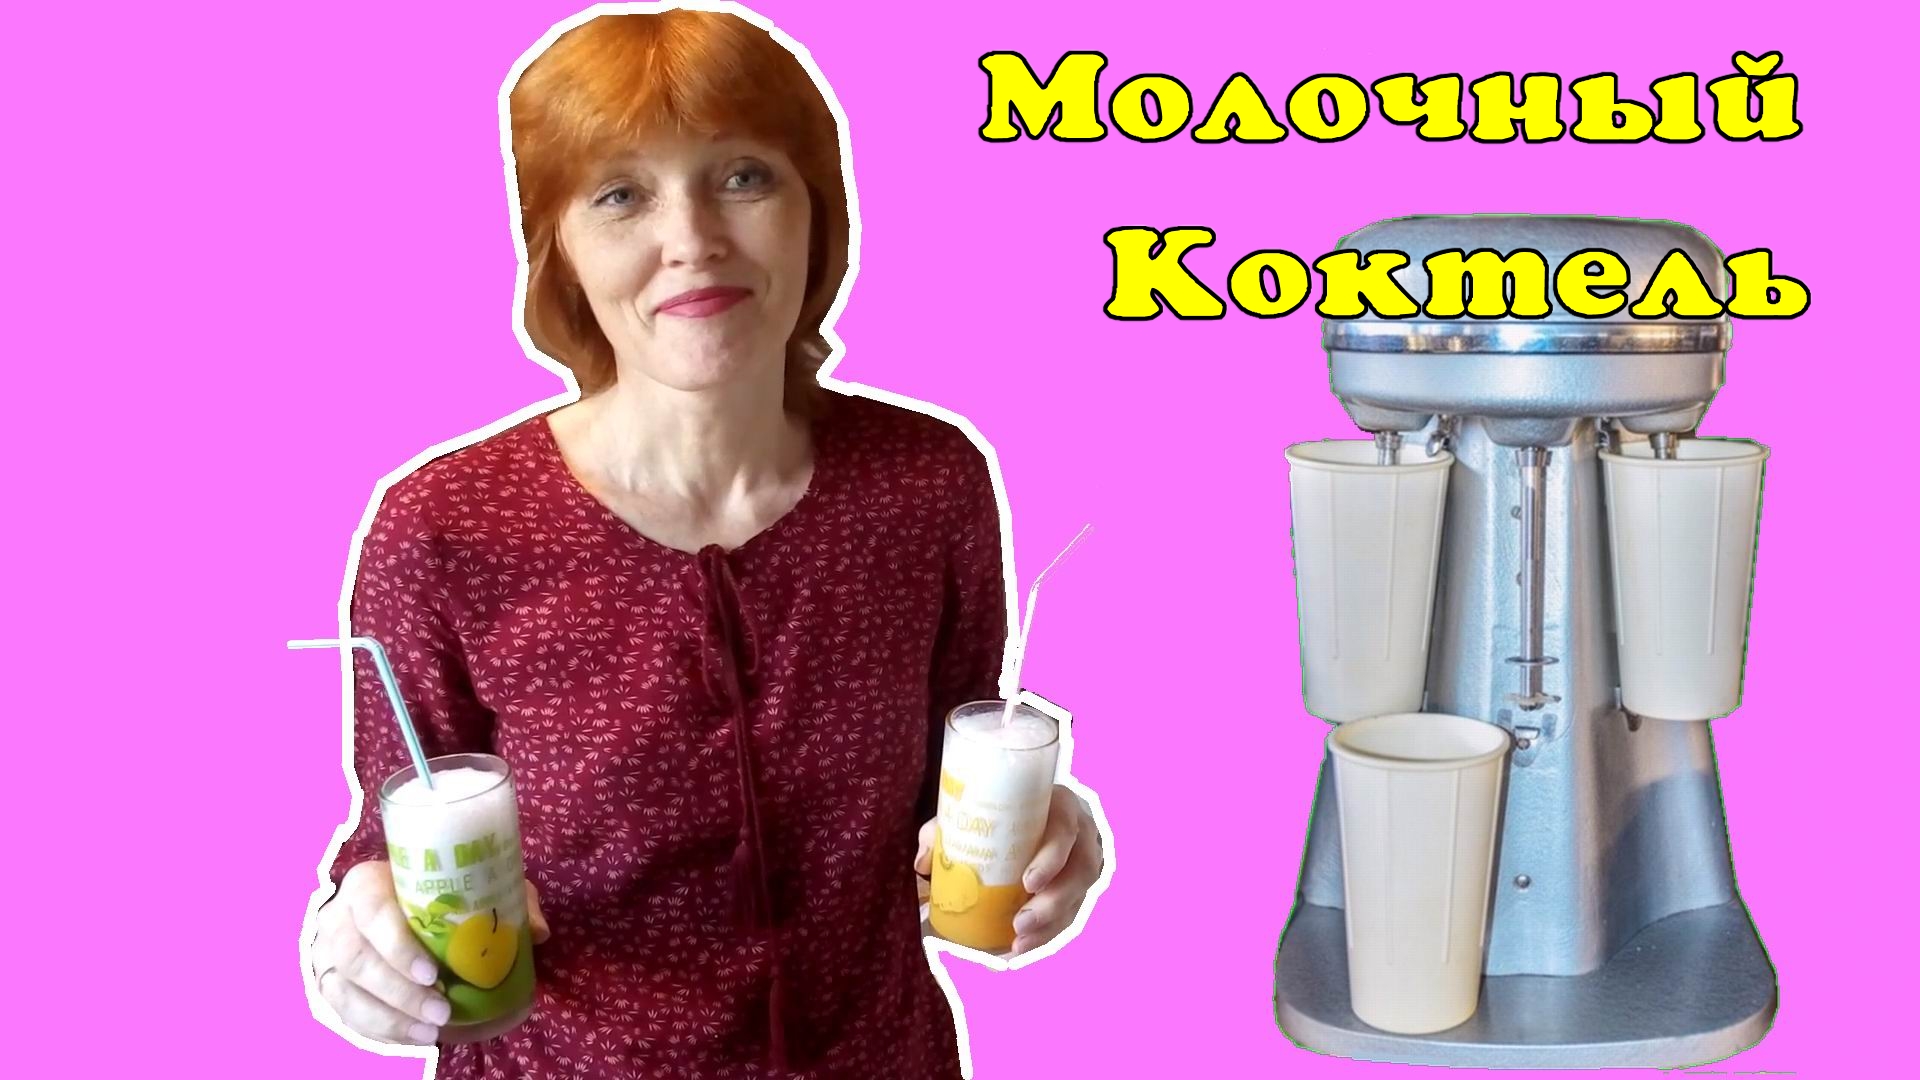 Молочный коктейль из СССР.